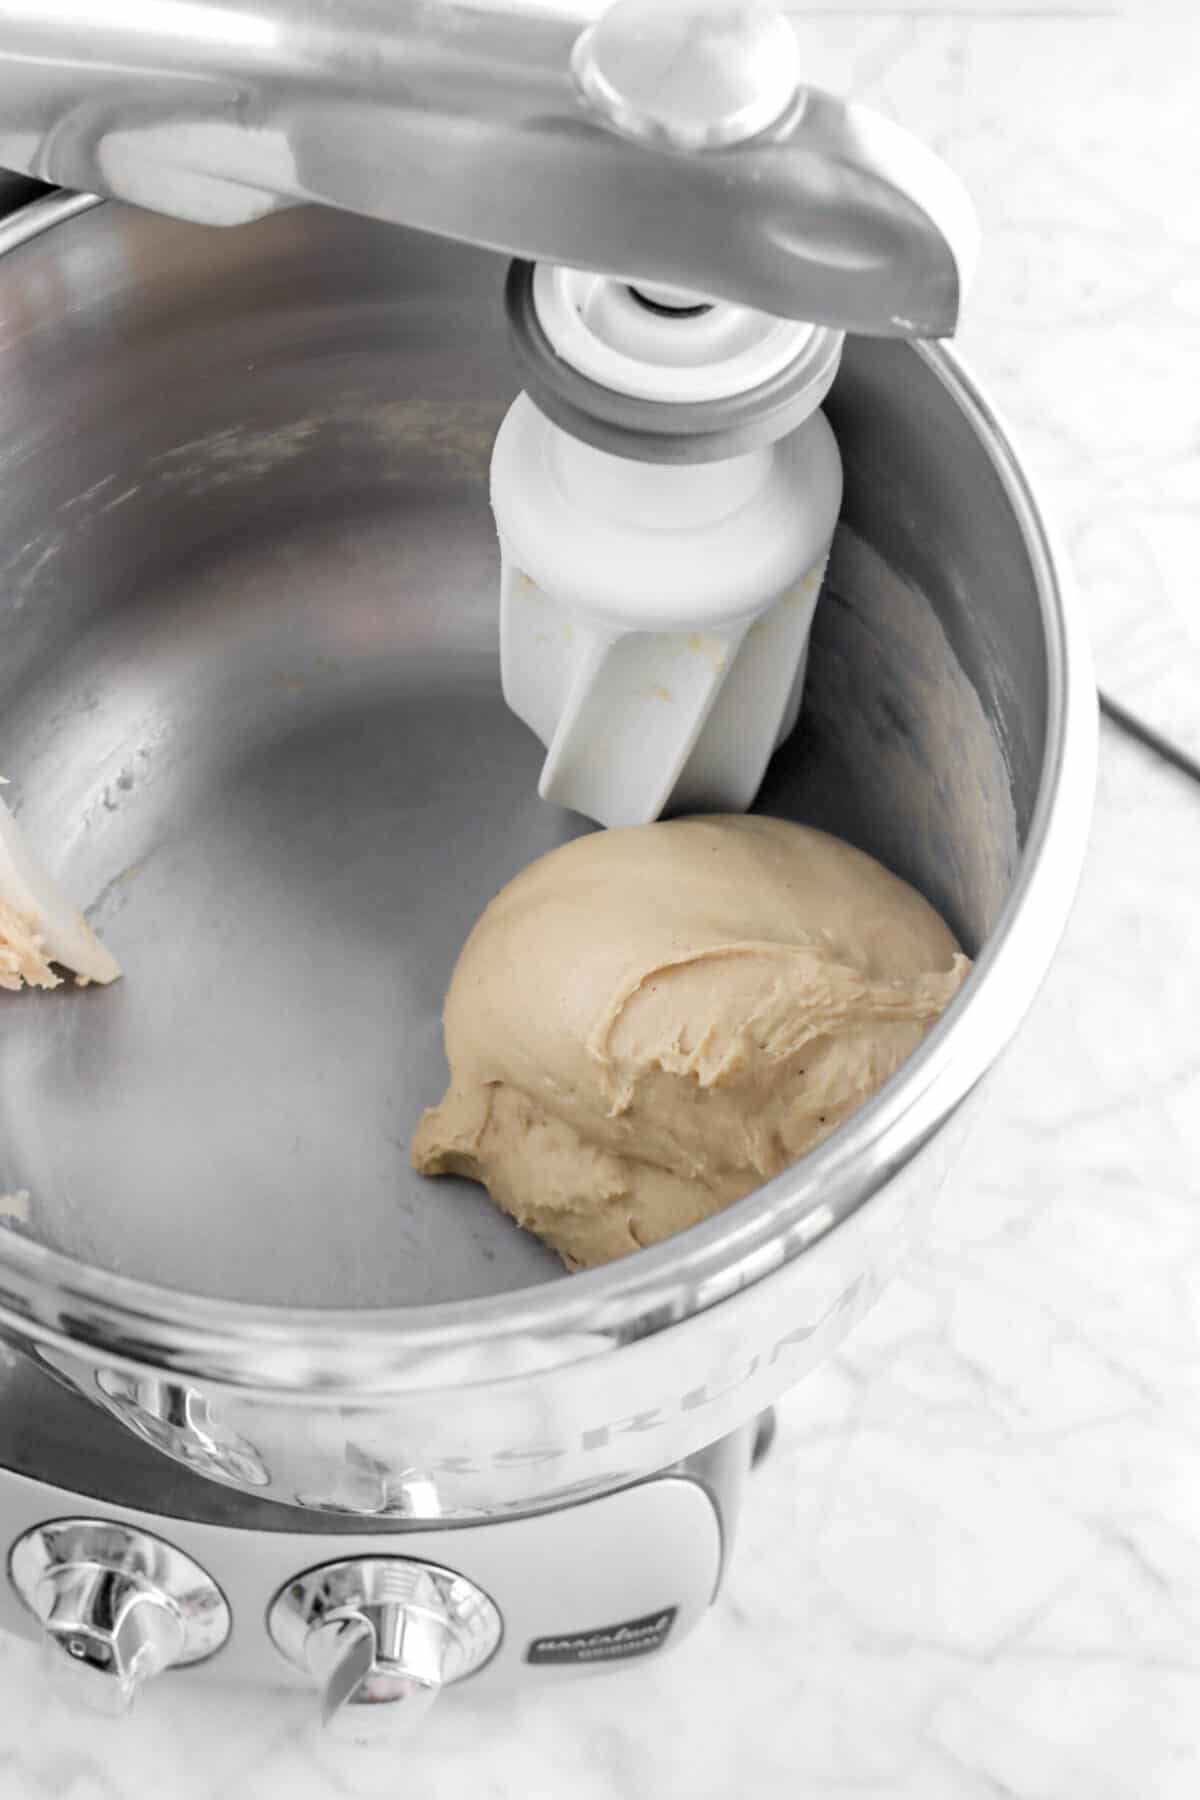 smooth dough in mixer bowl